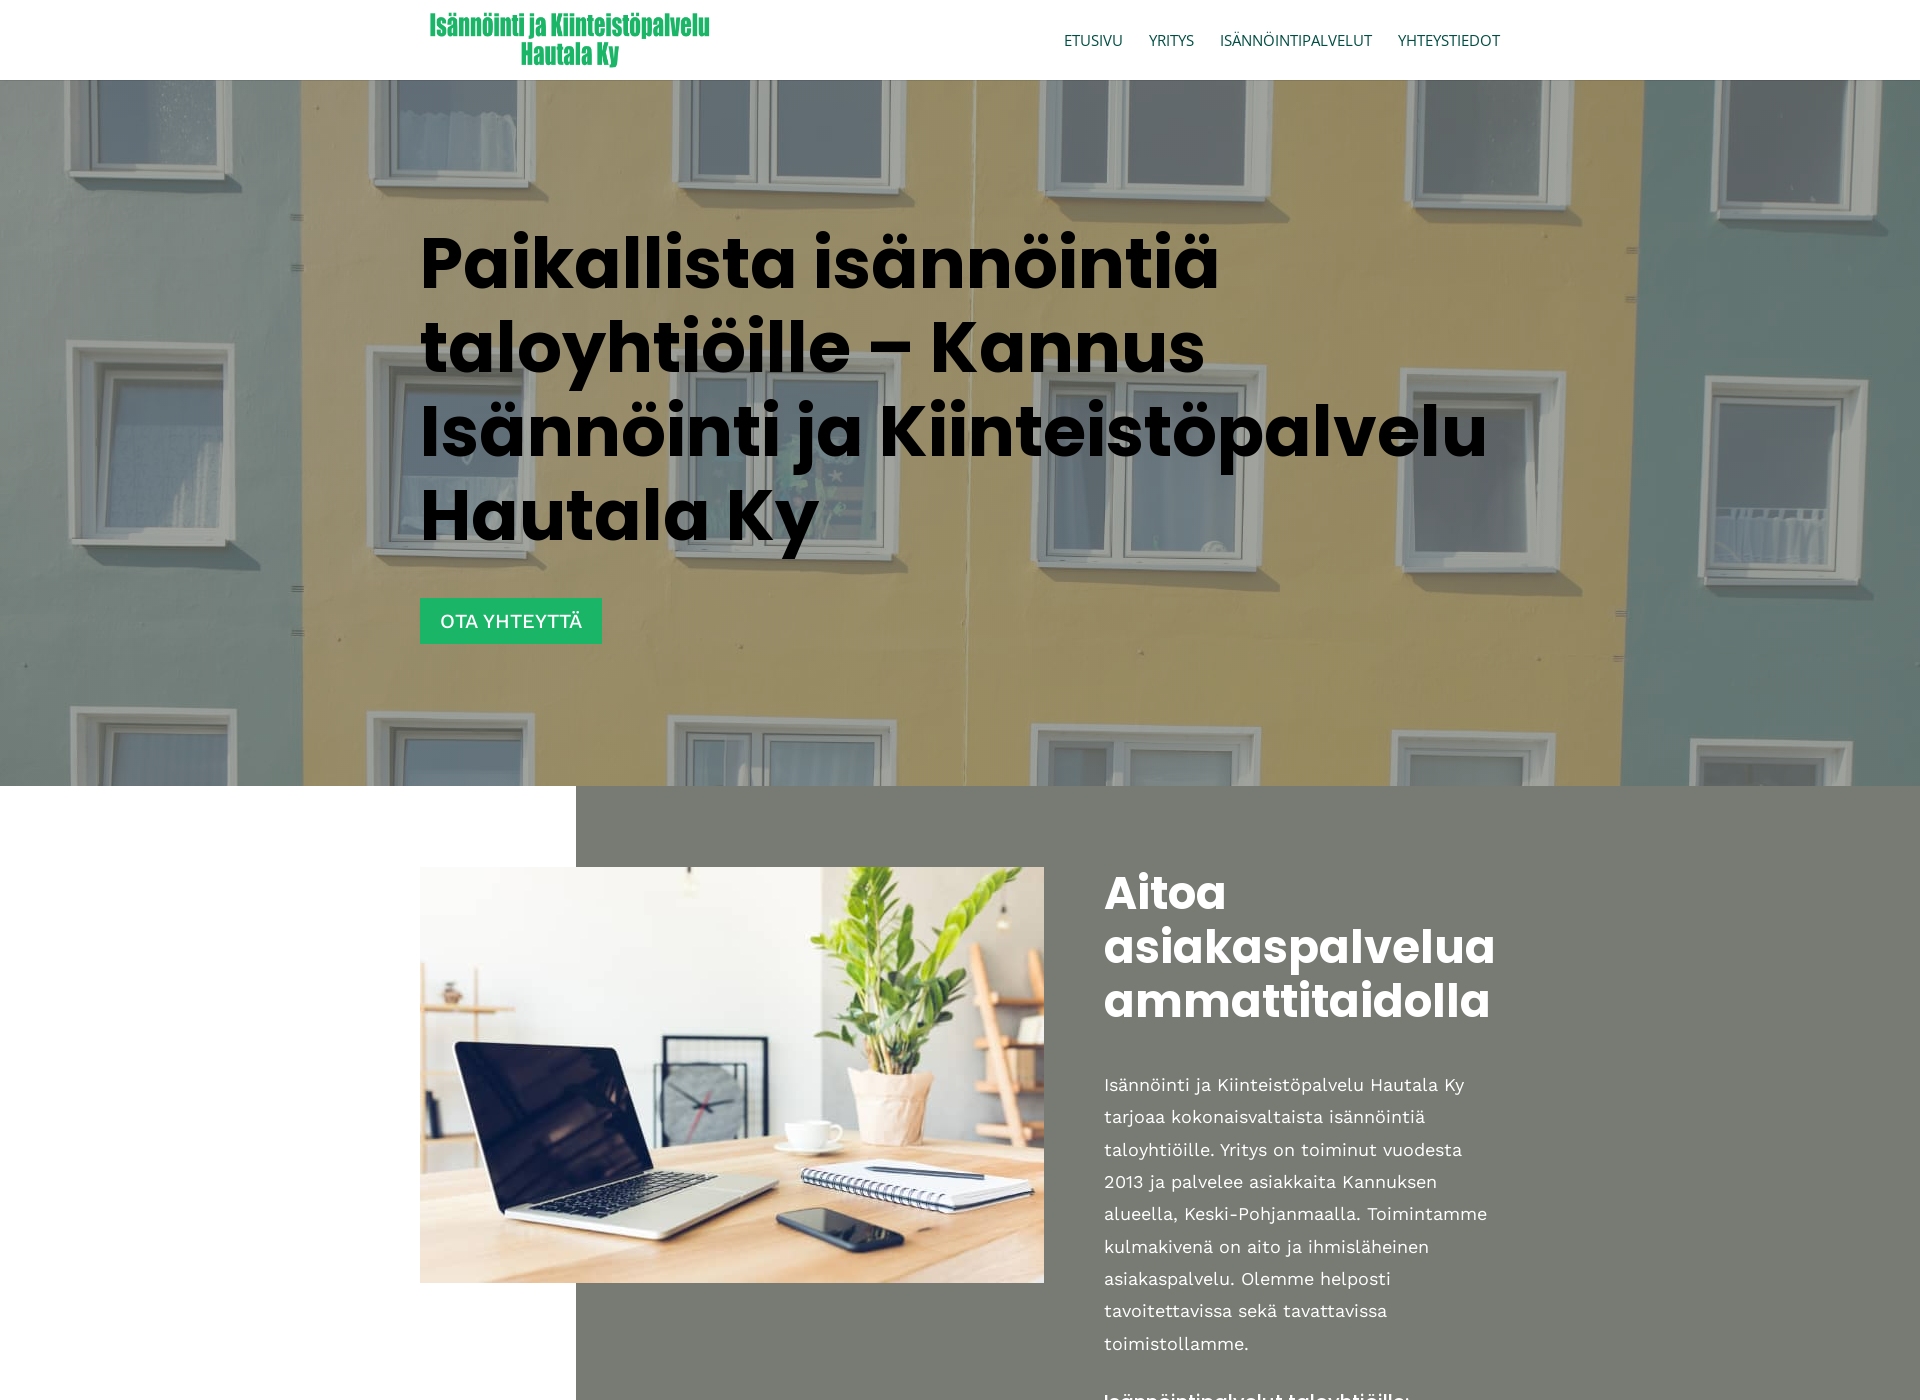 Näyttökuva isannointihautala.fi